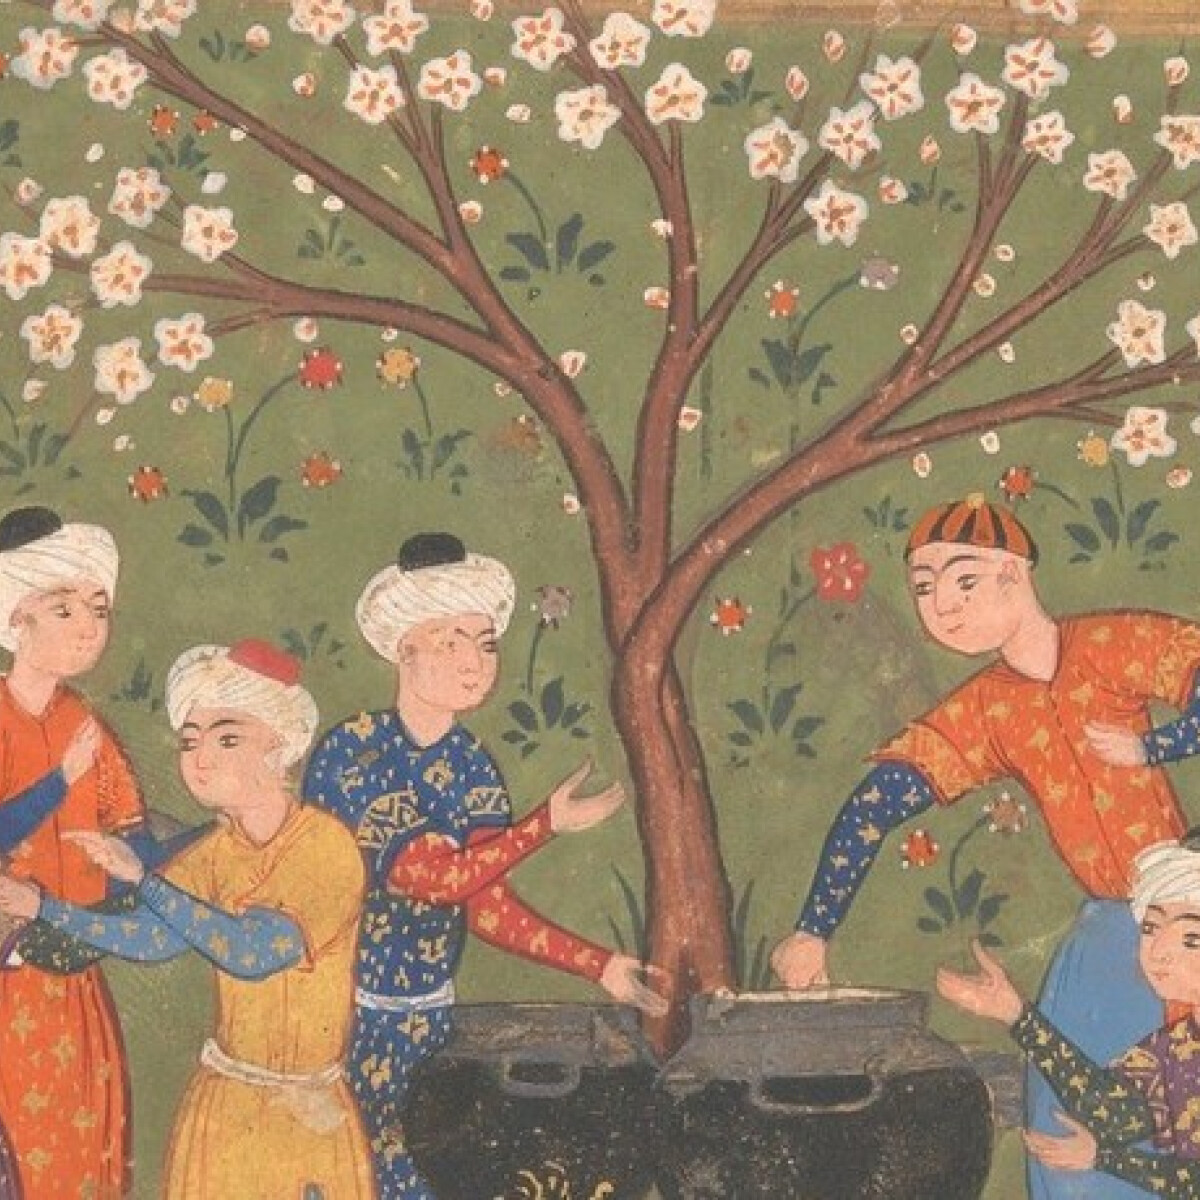 Főzőversenyek már az ókori Bagdadban is voltak – Uralkodók versengtek egymással a legjobb szakács címért